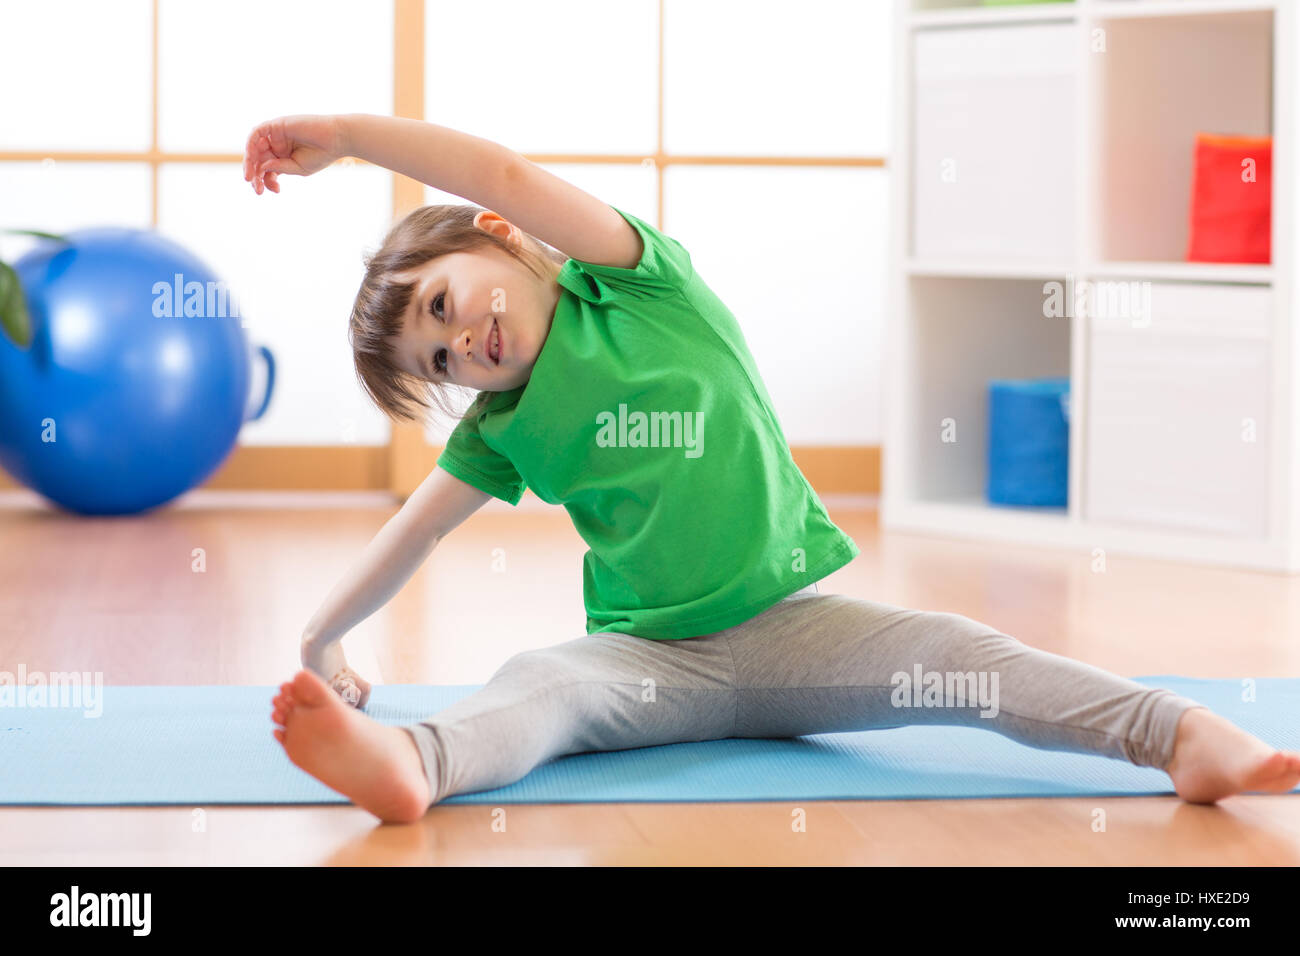 Sportive kid girl doing gymnastic à la maison Banque D'Images